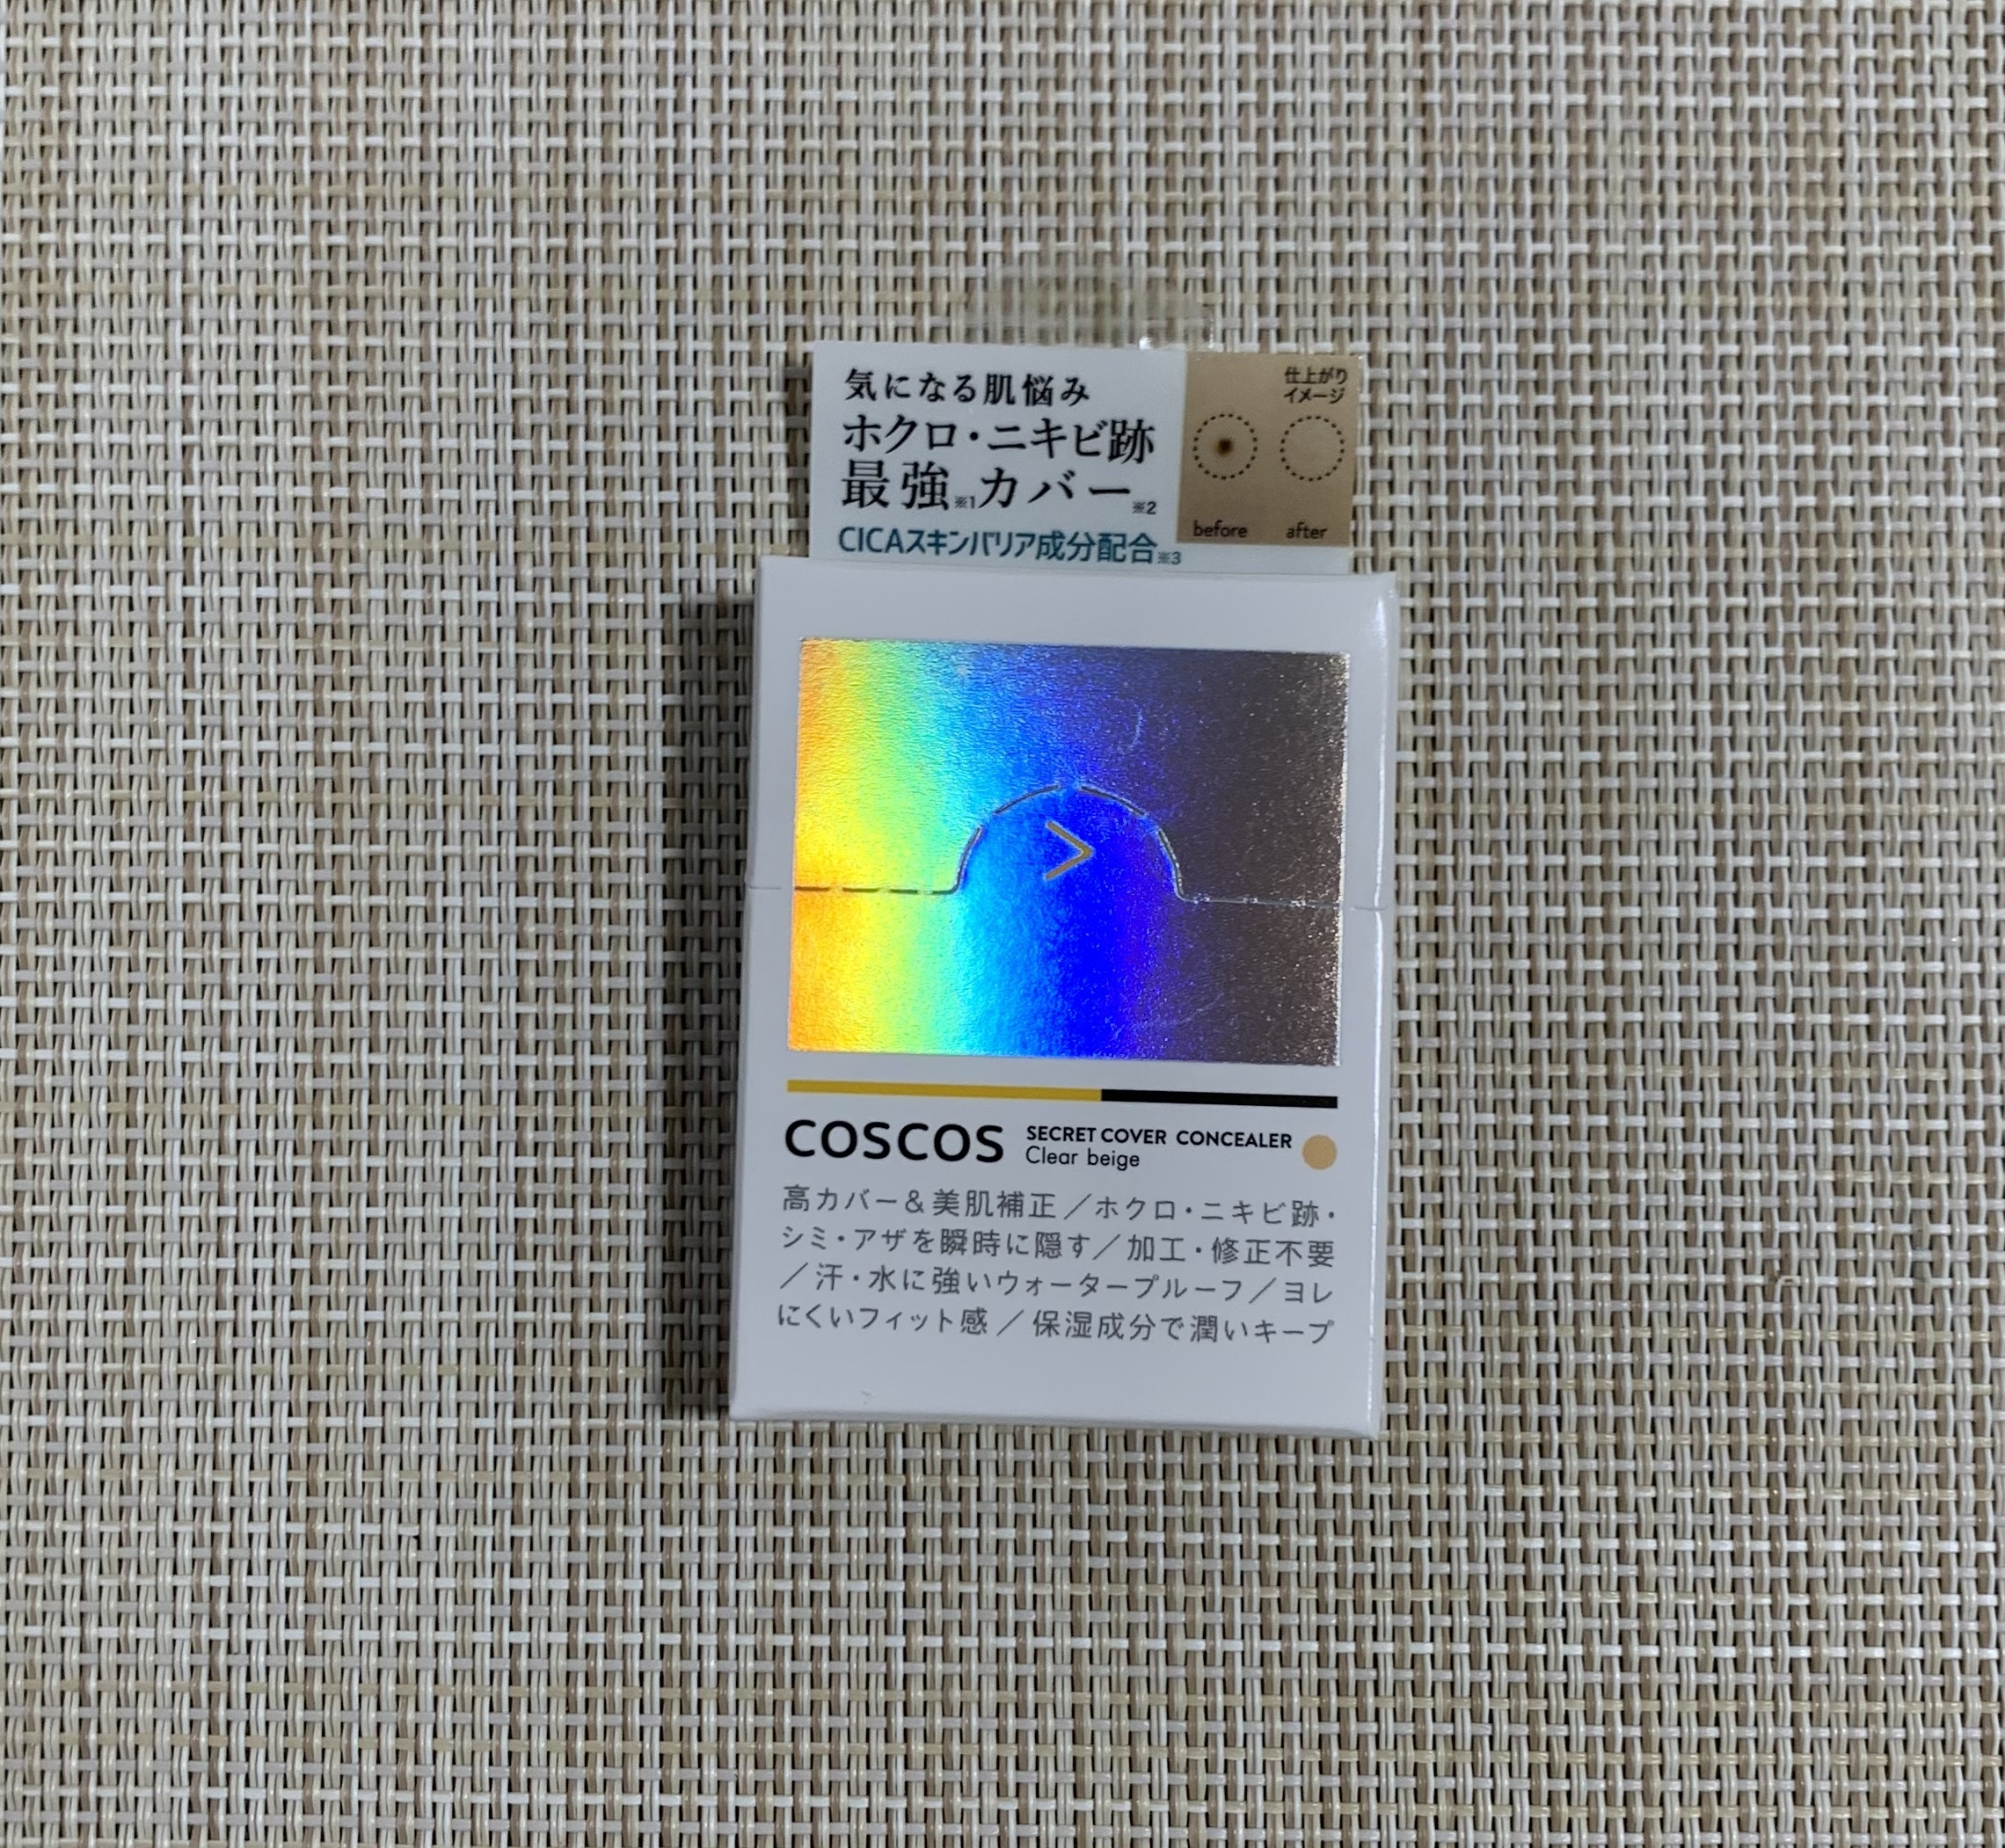 COSCOS シークレットカバー コンシーラーを使ったれなさんのクチコミ画像1